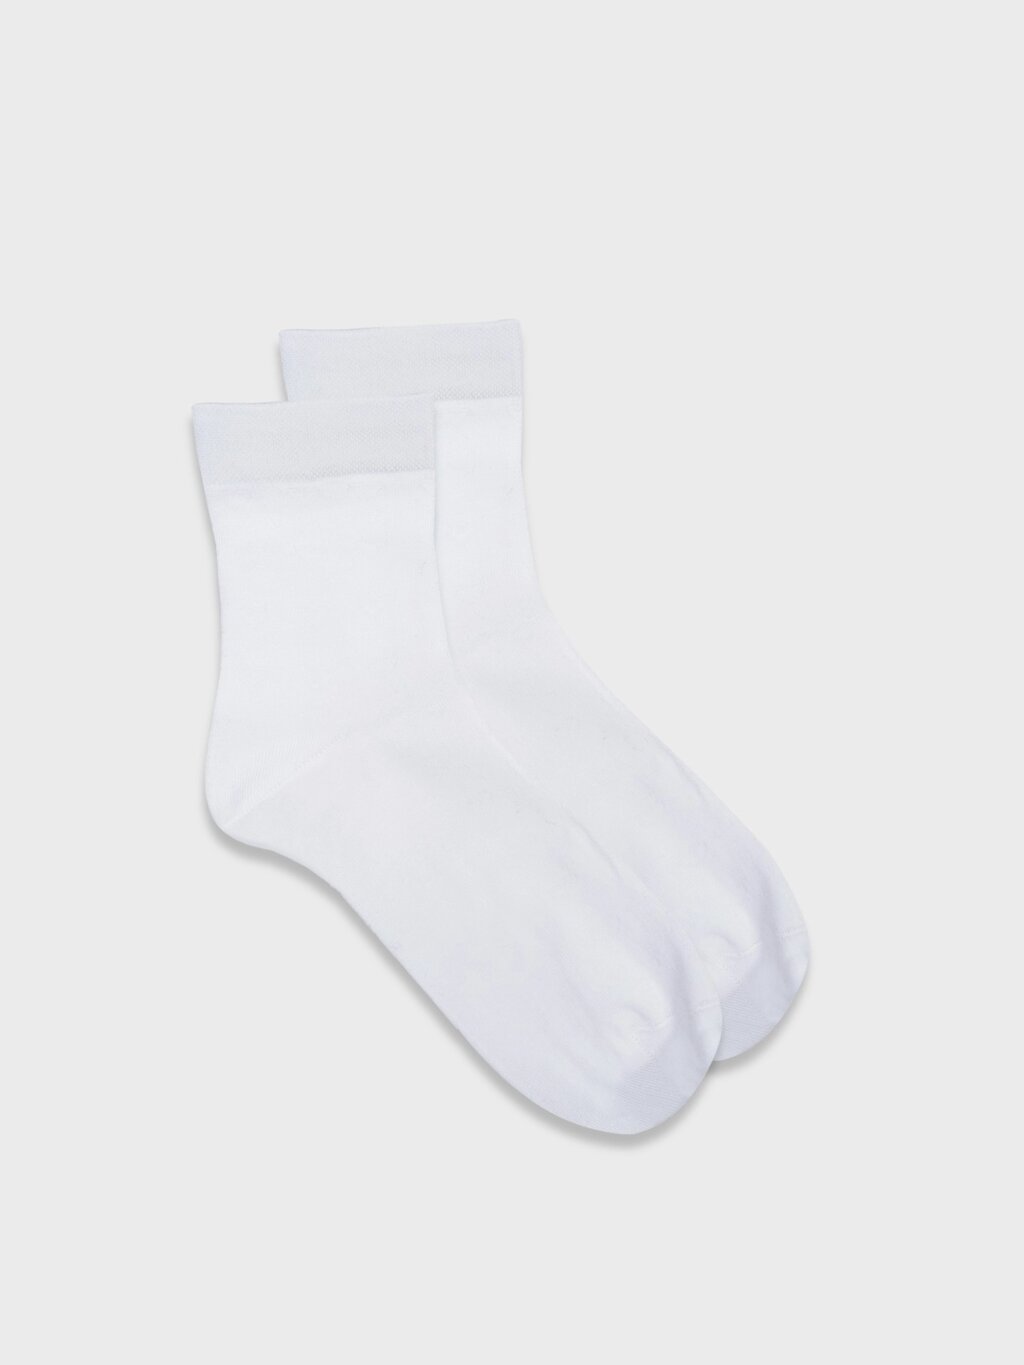 Белые хлопковые носки (38-40) от компании Admi - фото 1